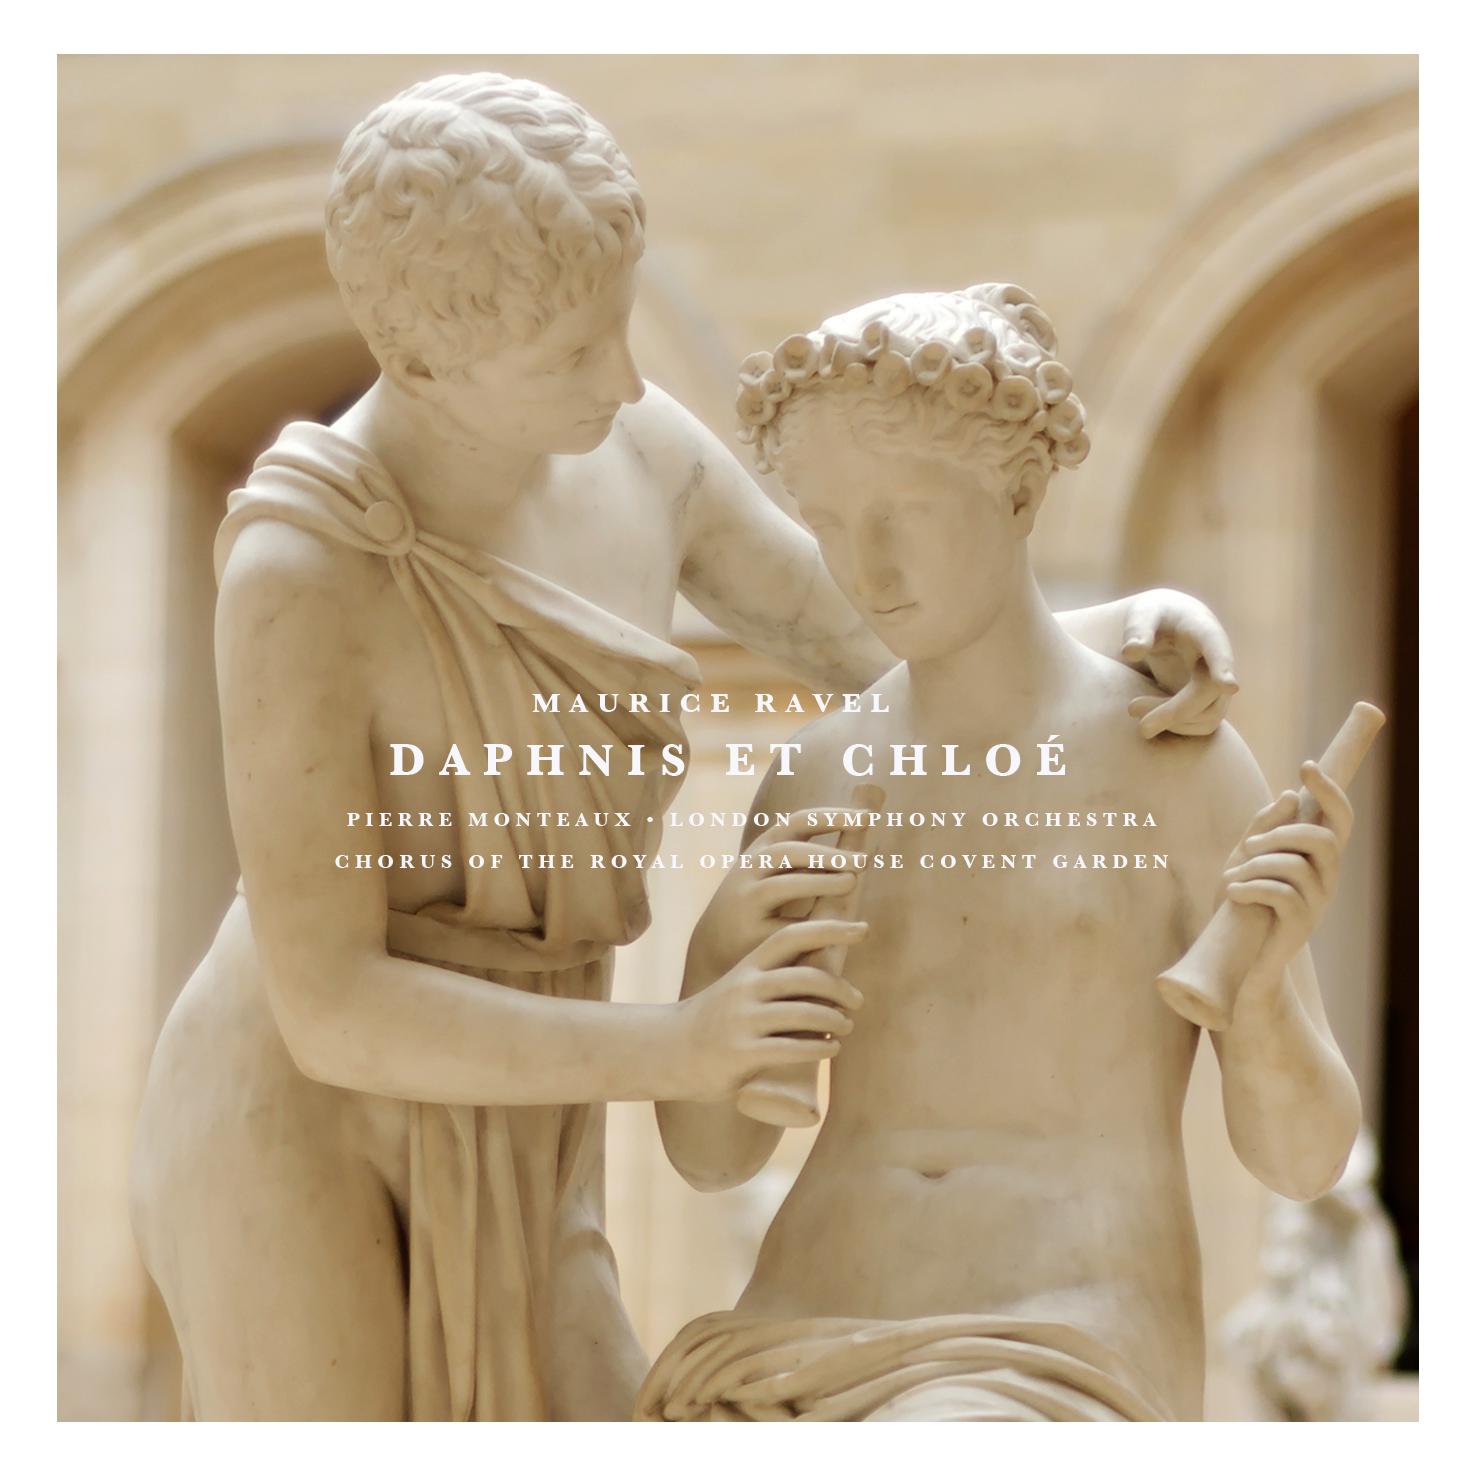 Daphnis Et Chloe: Part I " Introduction et Danse religieuse"